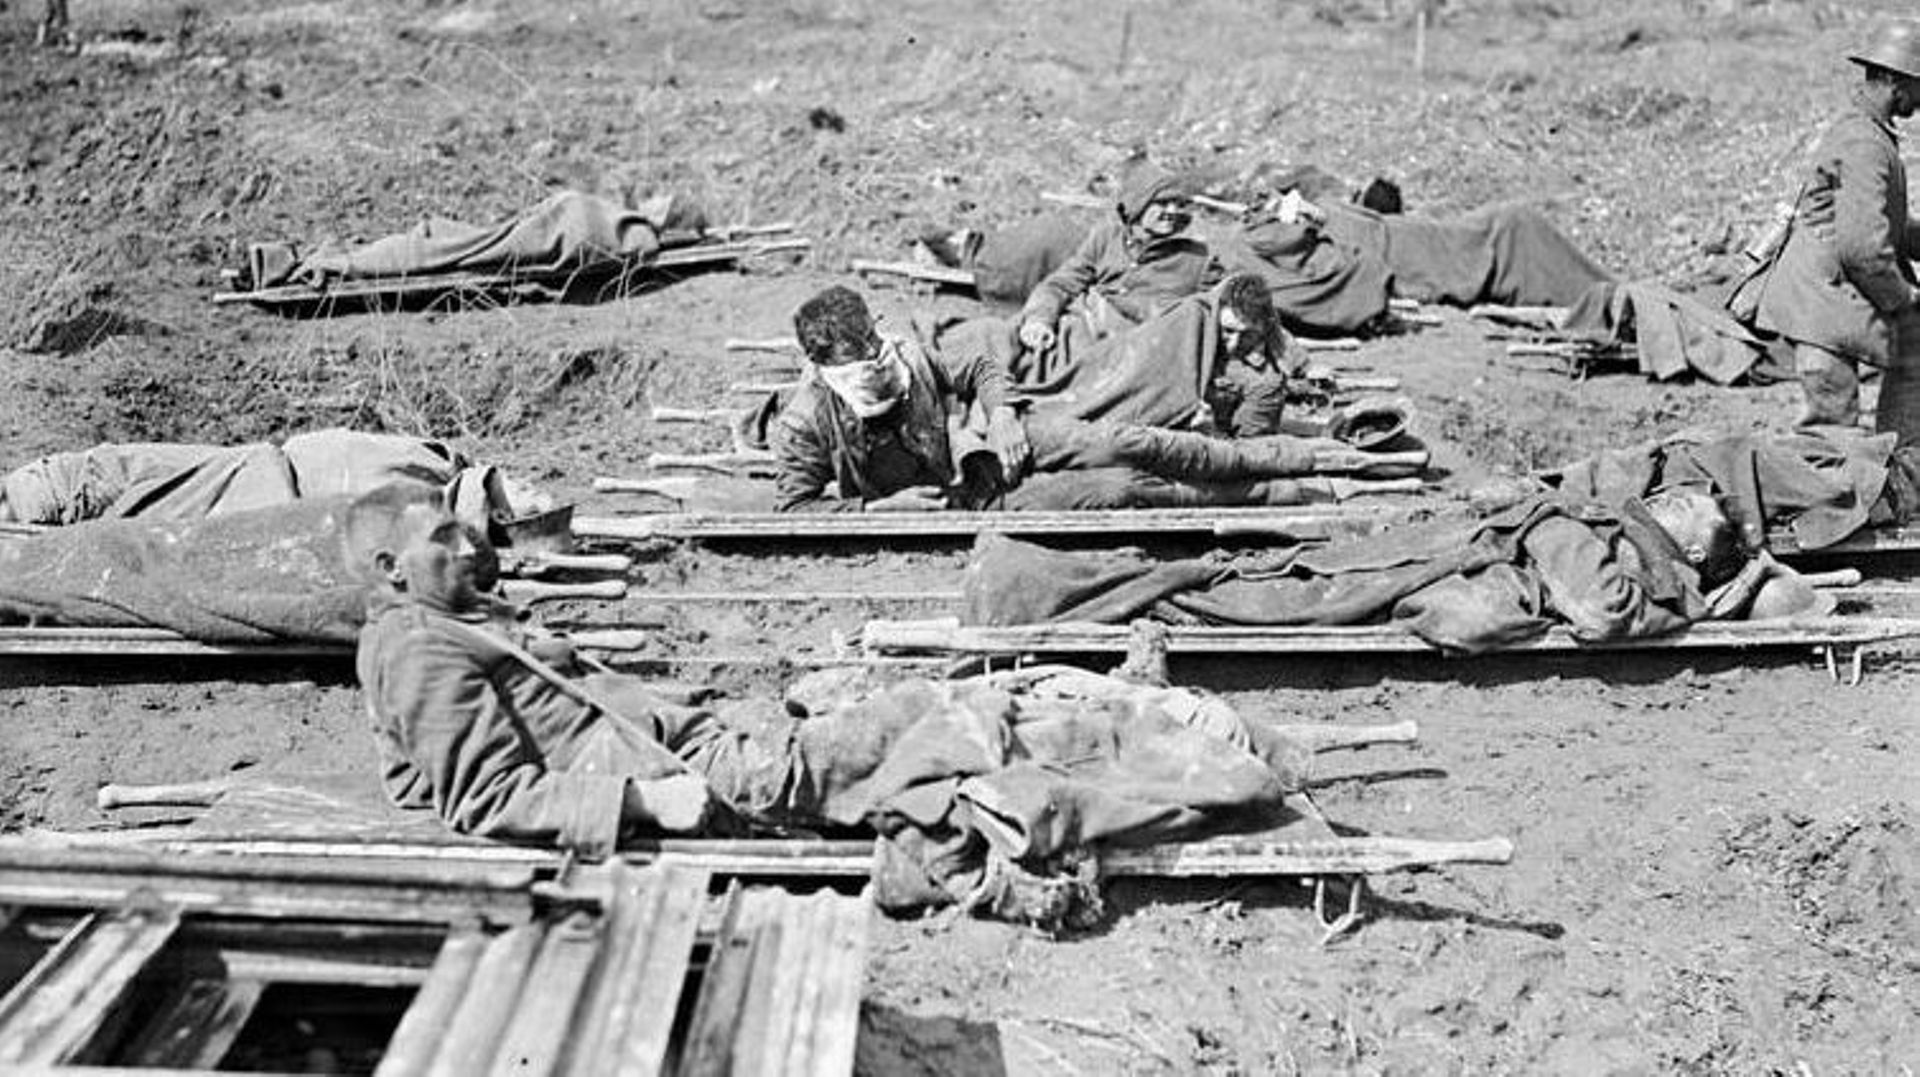 Le 22 août 1914, entre 4 et 5000 soldats vont perdre la vie sur le champ de bataille de Collarmont (illustration).